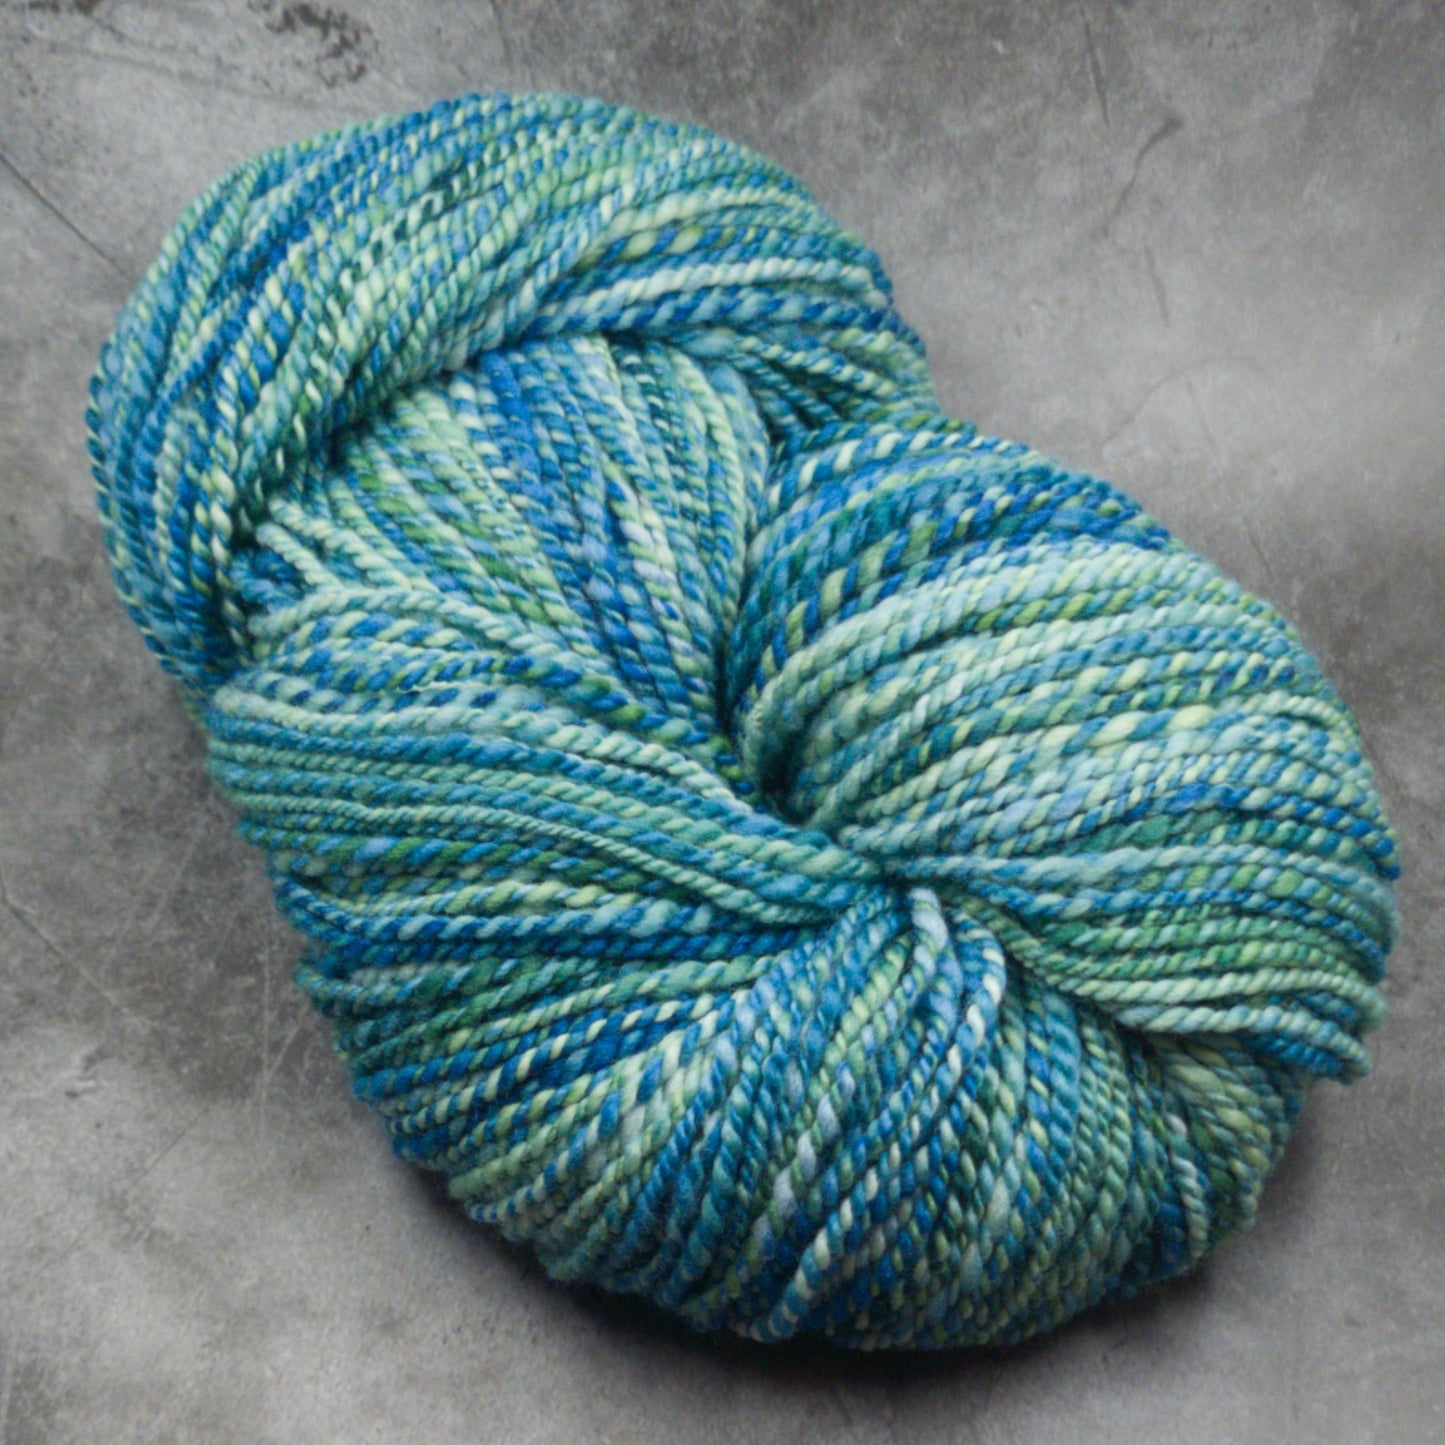 Handspun Worsted/Aran yarn, 116g skein, Kettle dyed Merino Wool, Minty Fresh OOAK